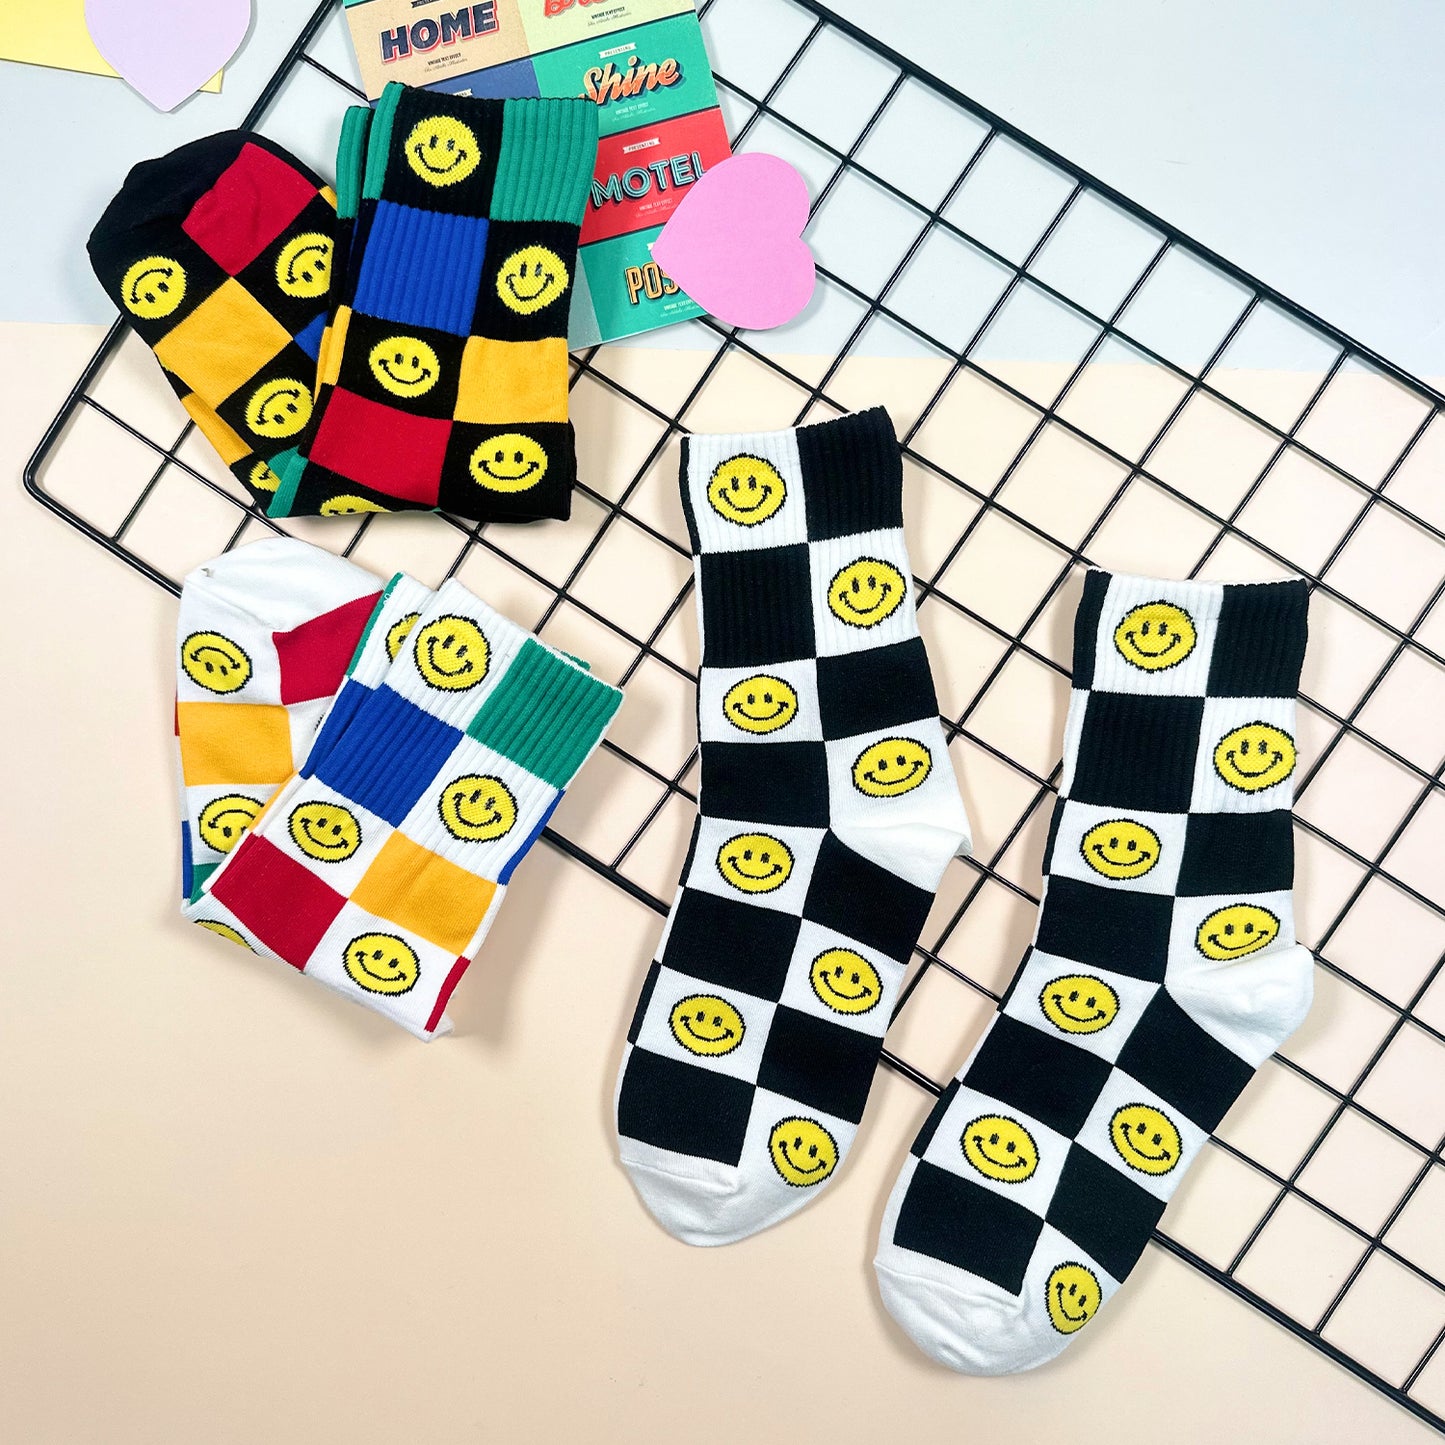 Women's Crew Socks - Smile Checkerboard